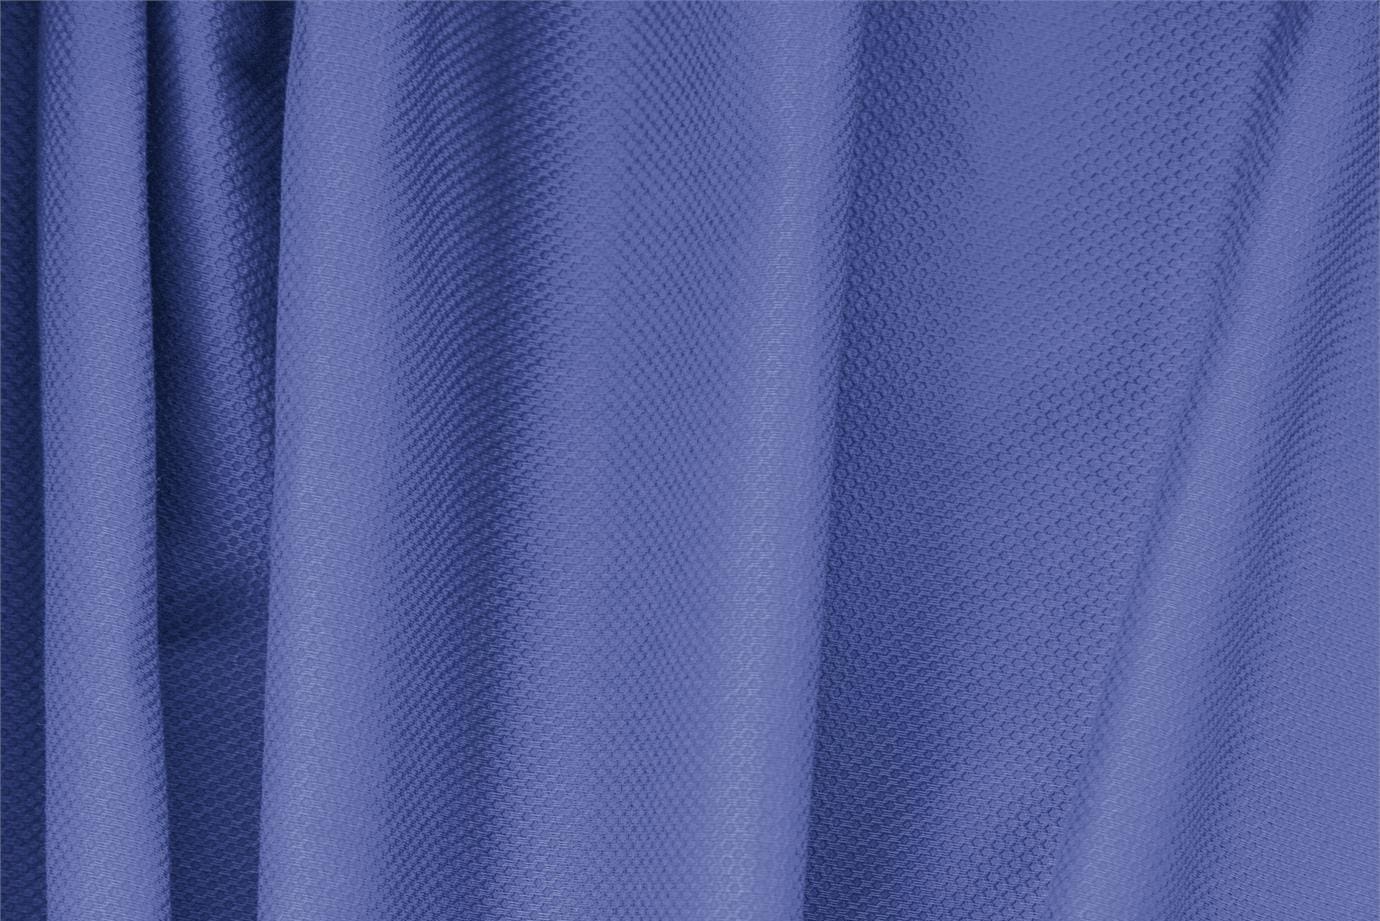 Tissu Piquet Stretch Bleu saphir en Coton, Stretch pour vêtements